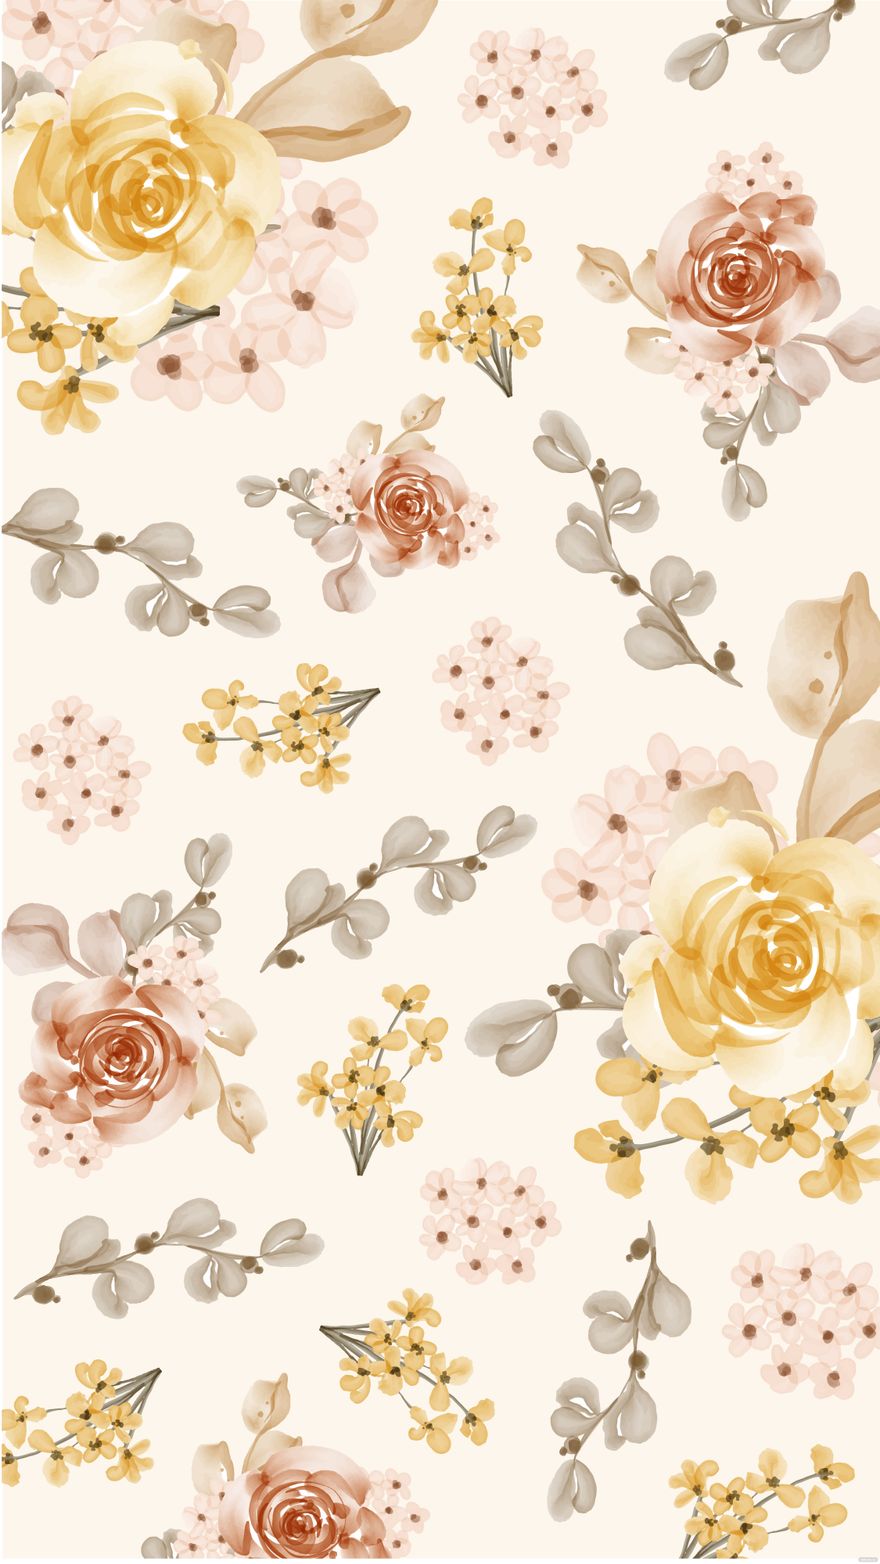 Decorative Wedding Floral Background in Illustrator, EPS, SVG, JPG, PNG